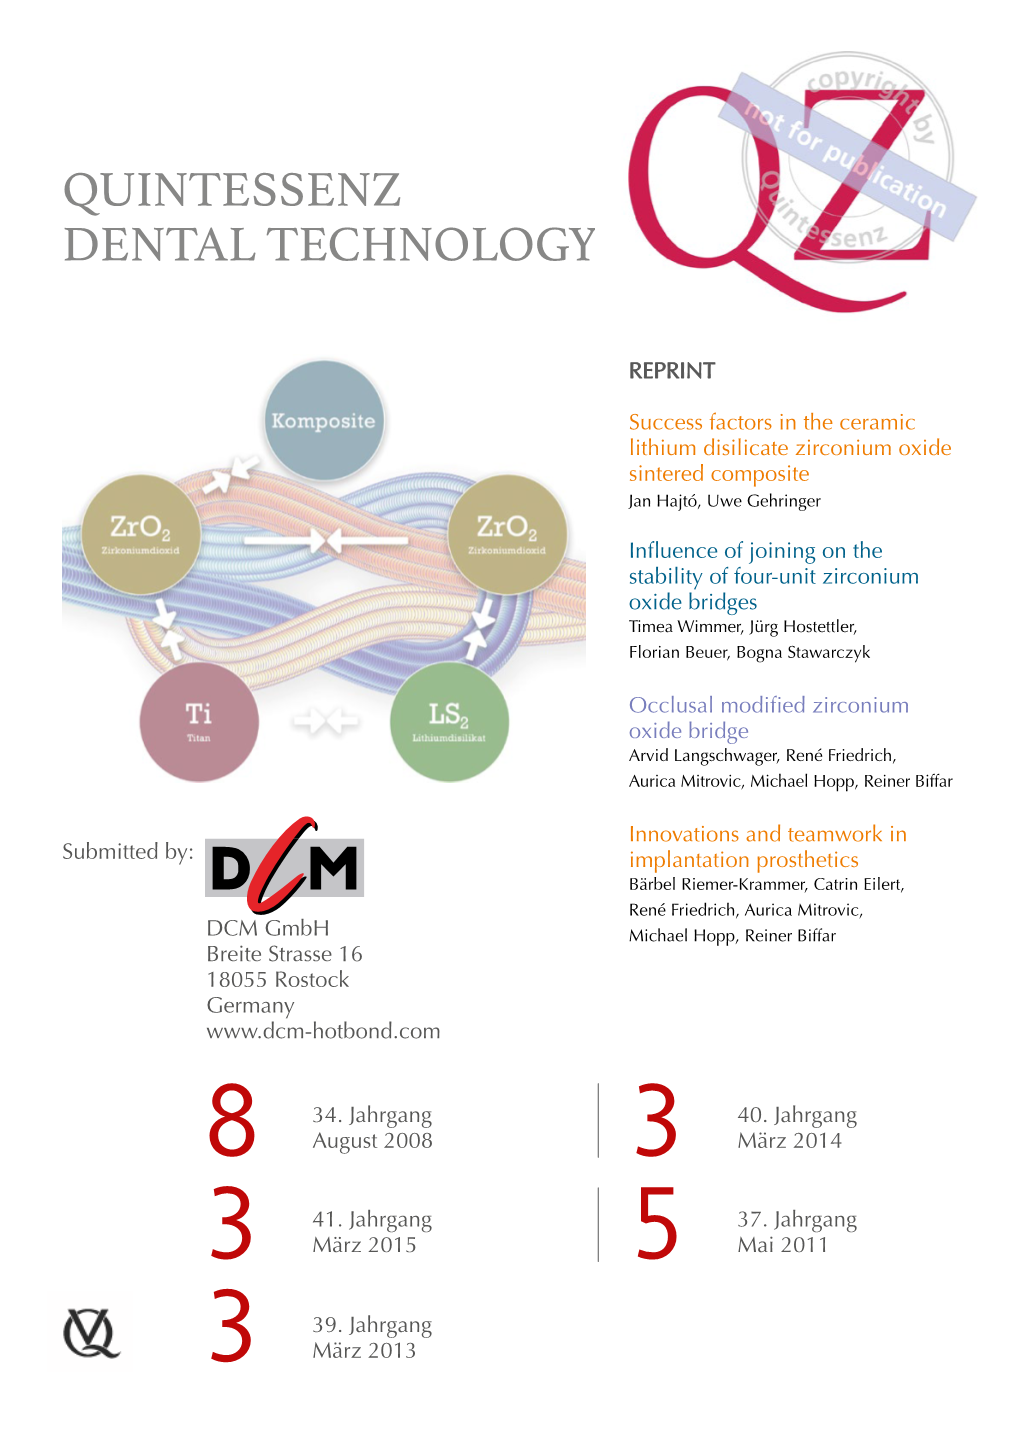 Quintessenz Dental Technology